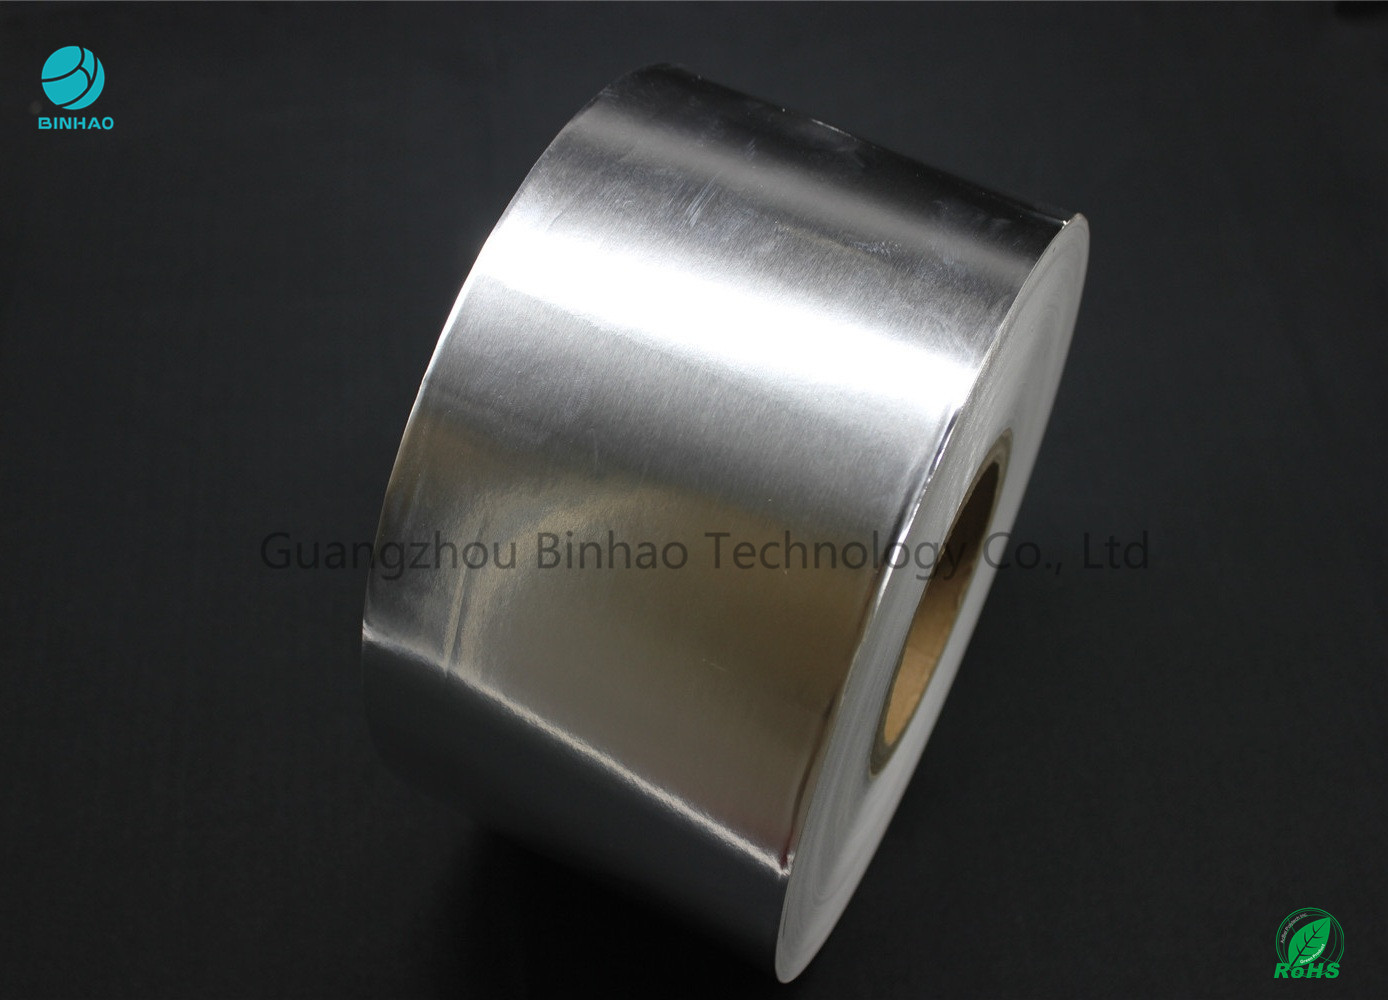 Лоснистая серебряная бумага с покрытием алюминиевой фольги для табака упаковывая в простом массовом производстве